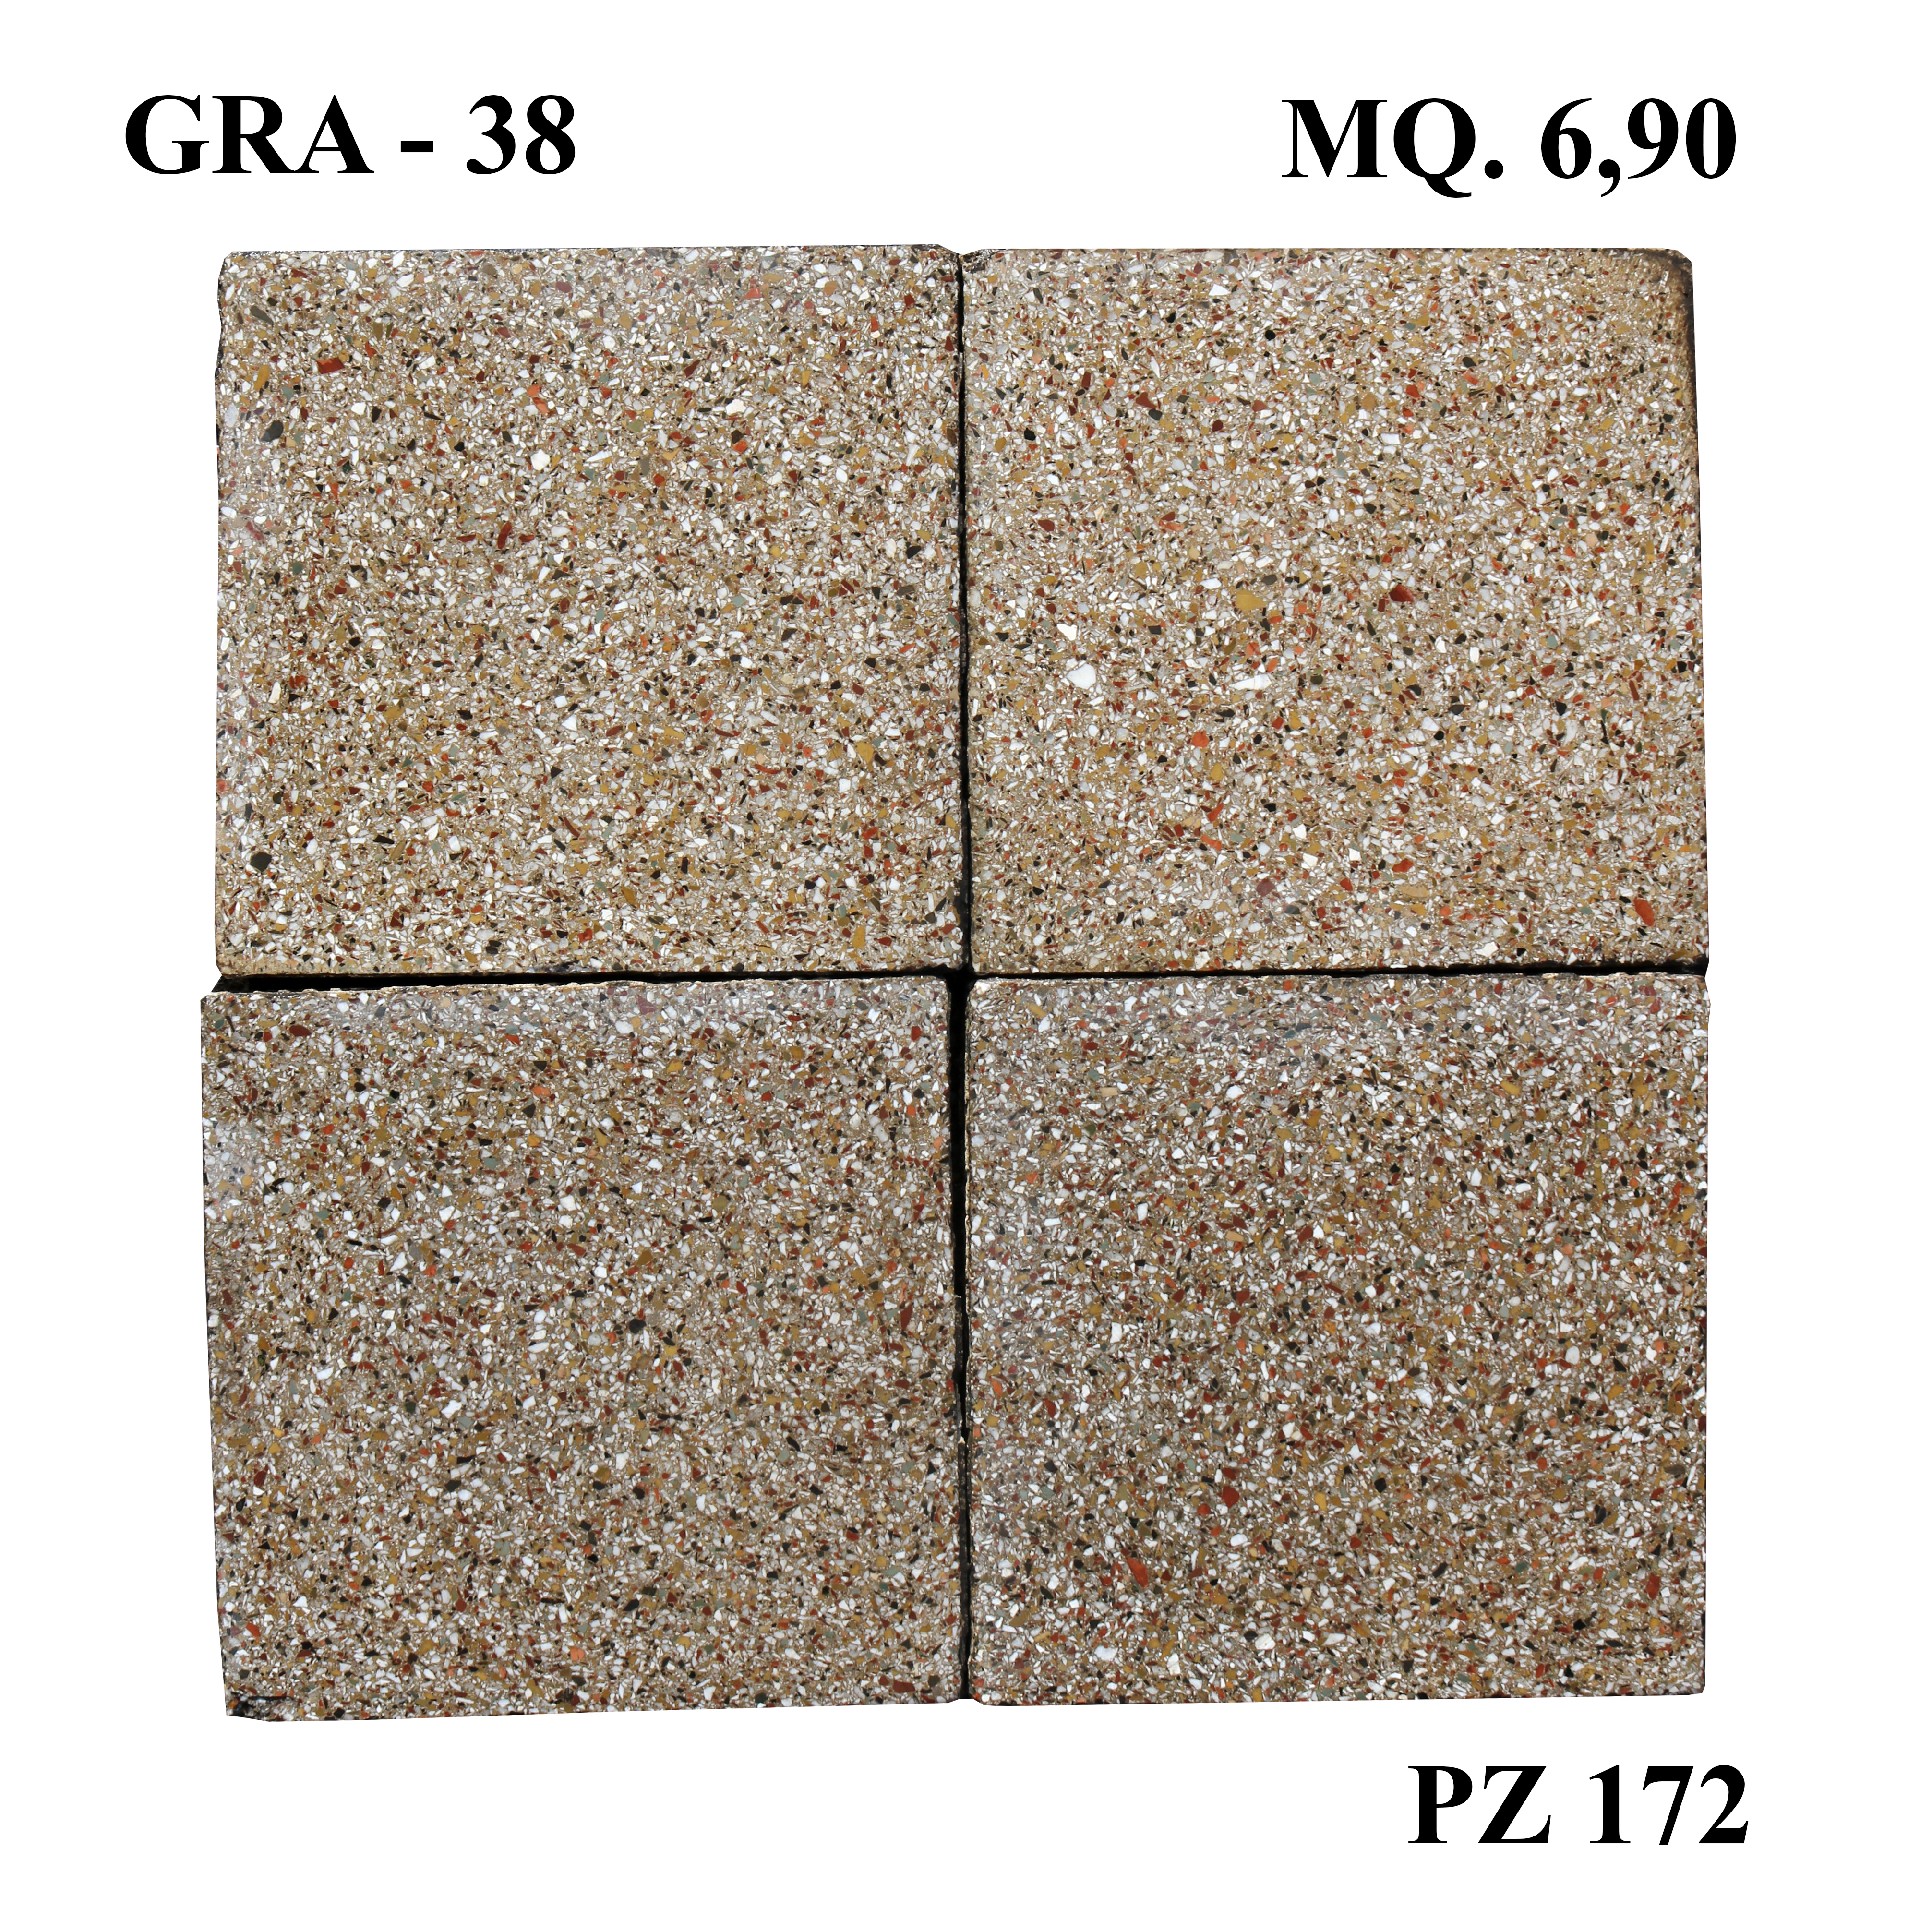 Antica pavimentazione in graniglia cm20x20. - Cementine e Graniglie - Pavimentazioni Antiche - Prodotti - Antichità Fiorillo